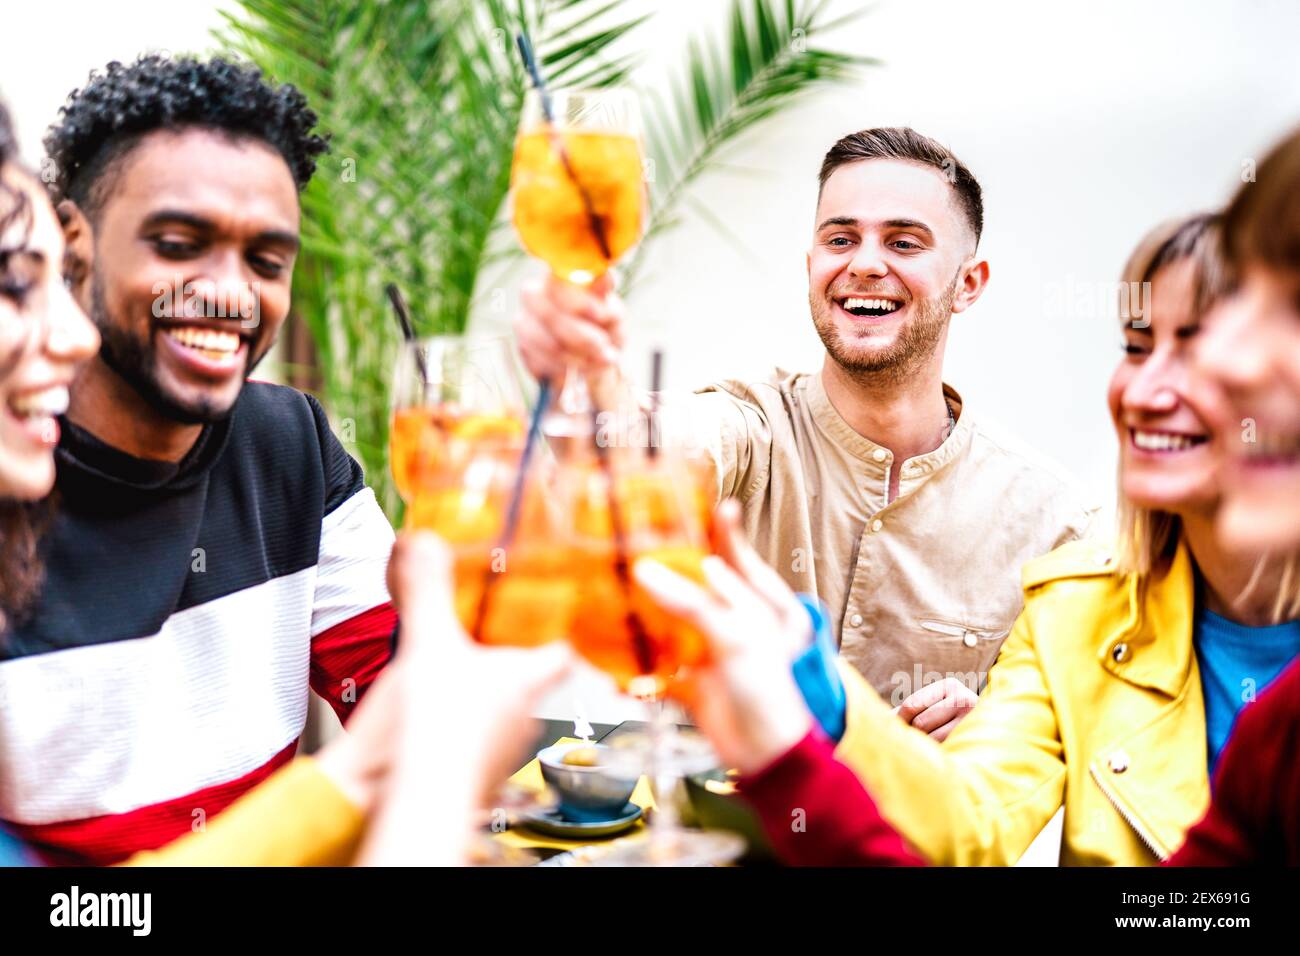 Leute toasten Spritz in Cocktail Bar Restaurant - Life style Konzept mit jungen Freunden, die Spaß haben, gemeinsam Getränke zu teilen Happy Hour Stockfoto